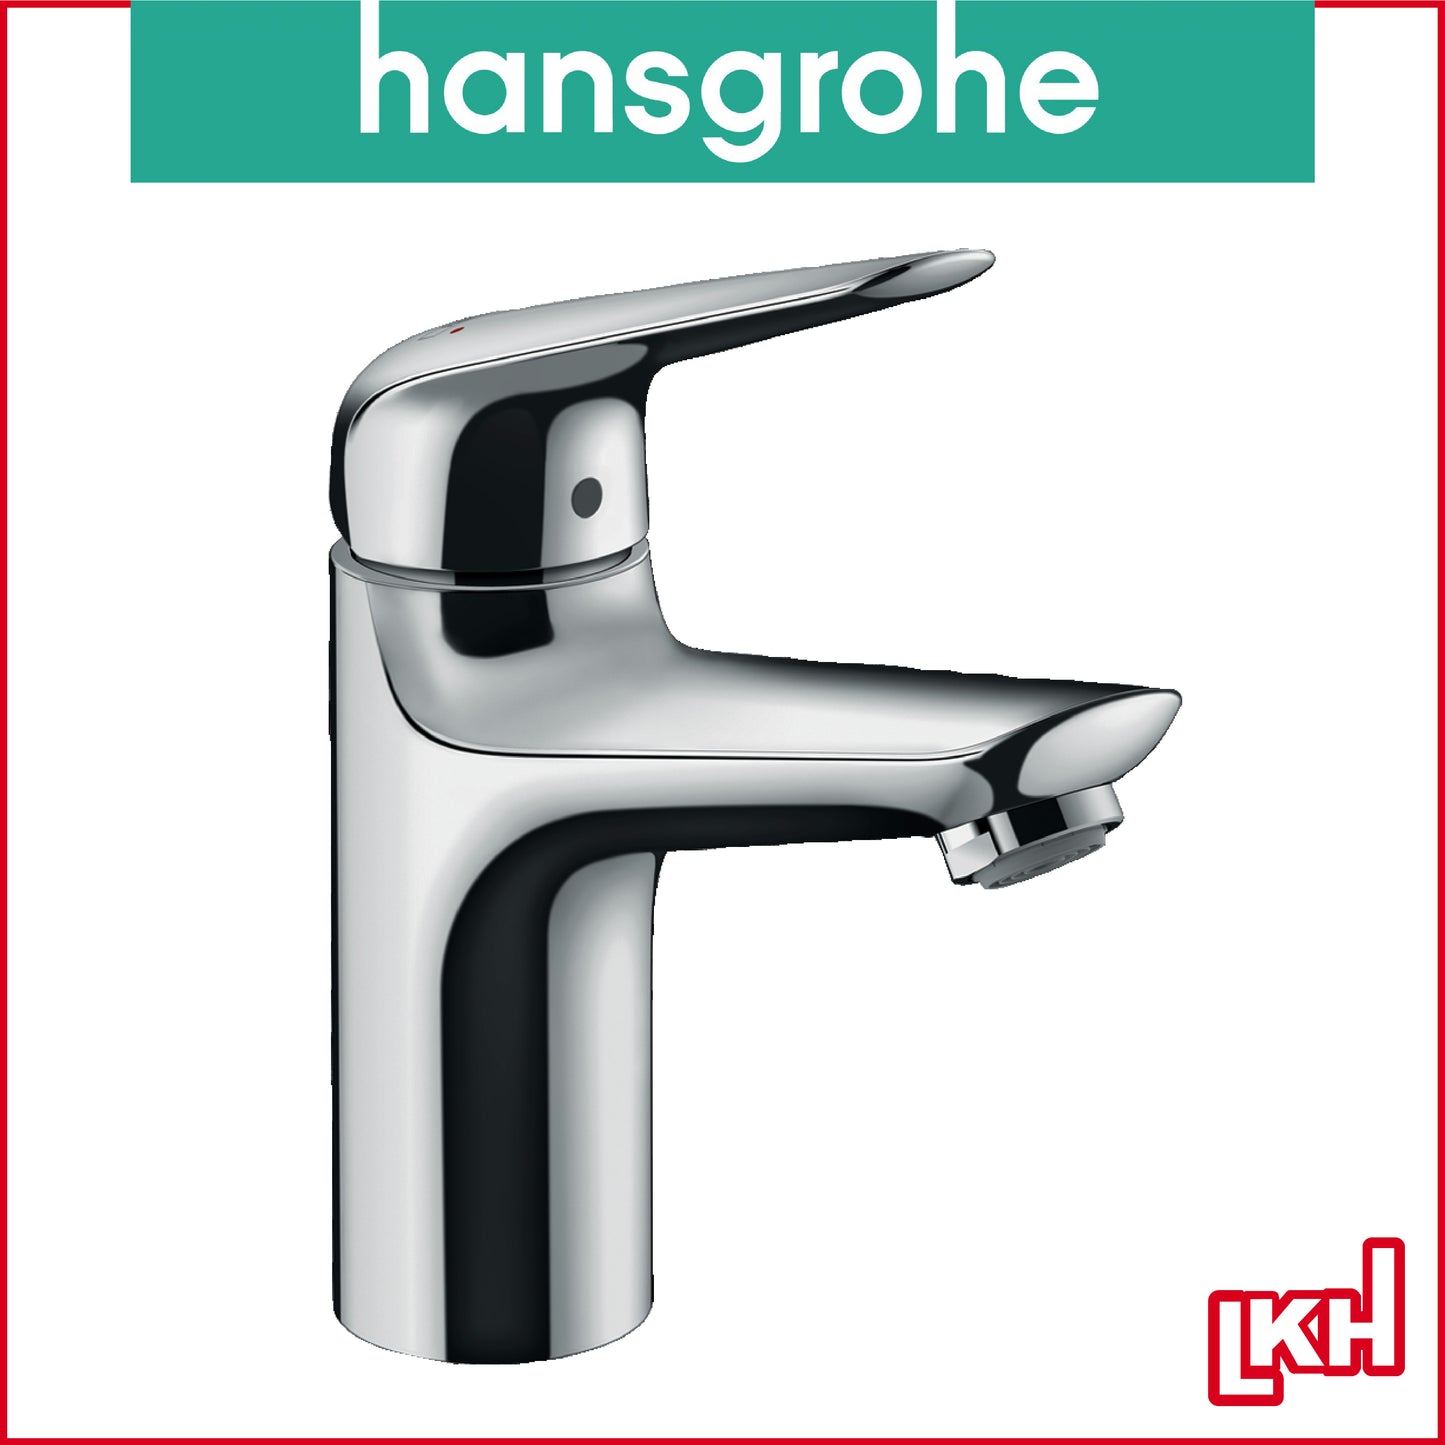 hansgrohe basin mixer 71027009